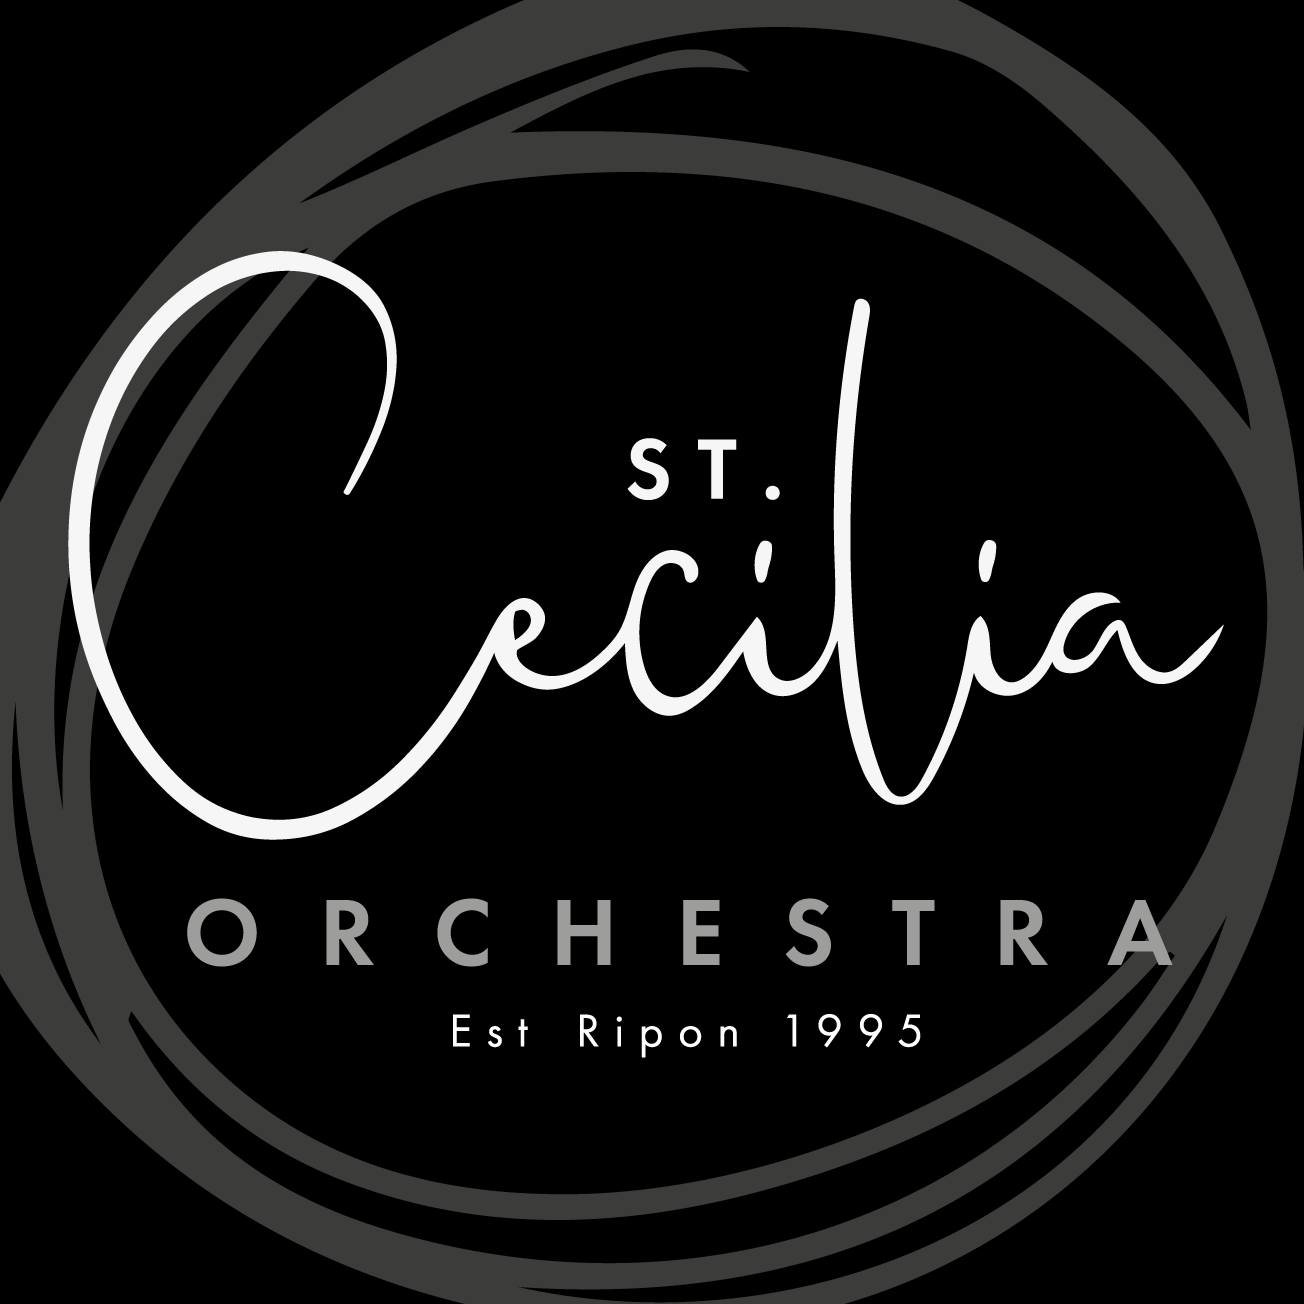 St. Cecilia Orchestra